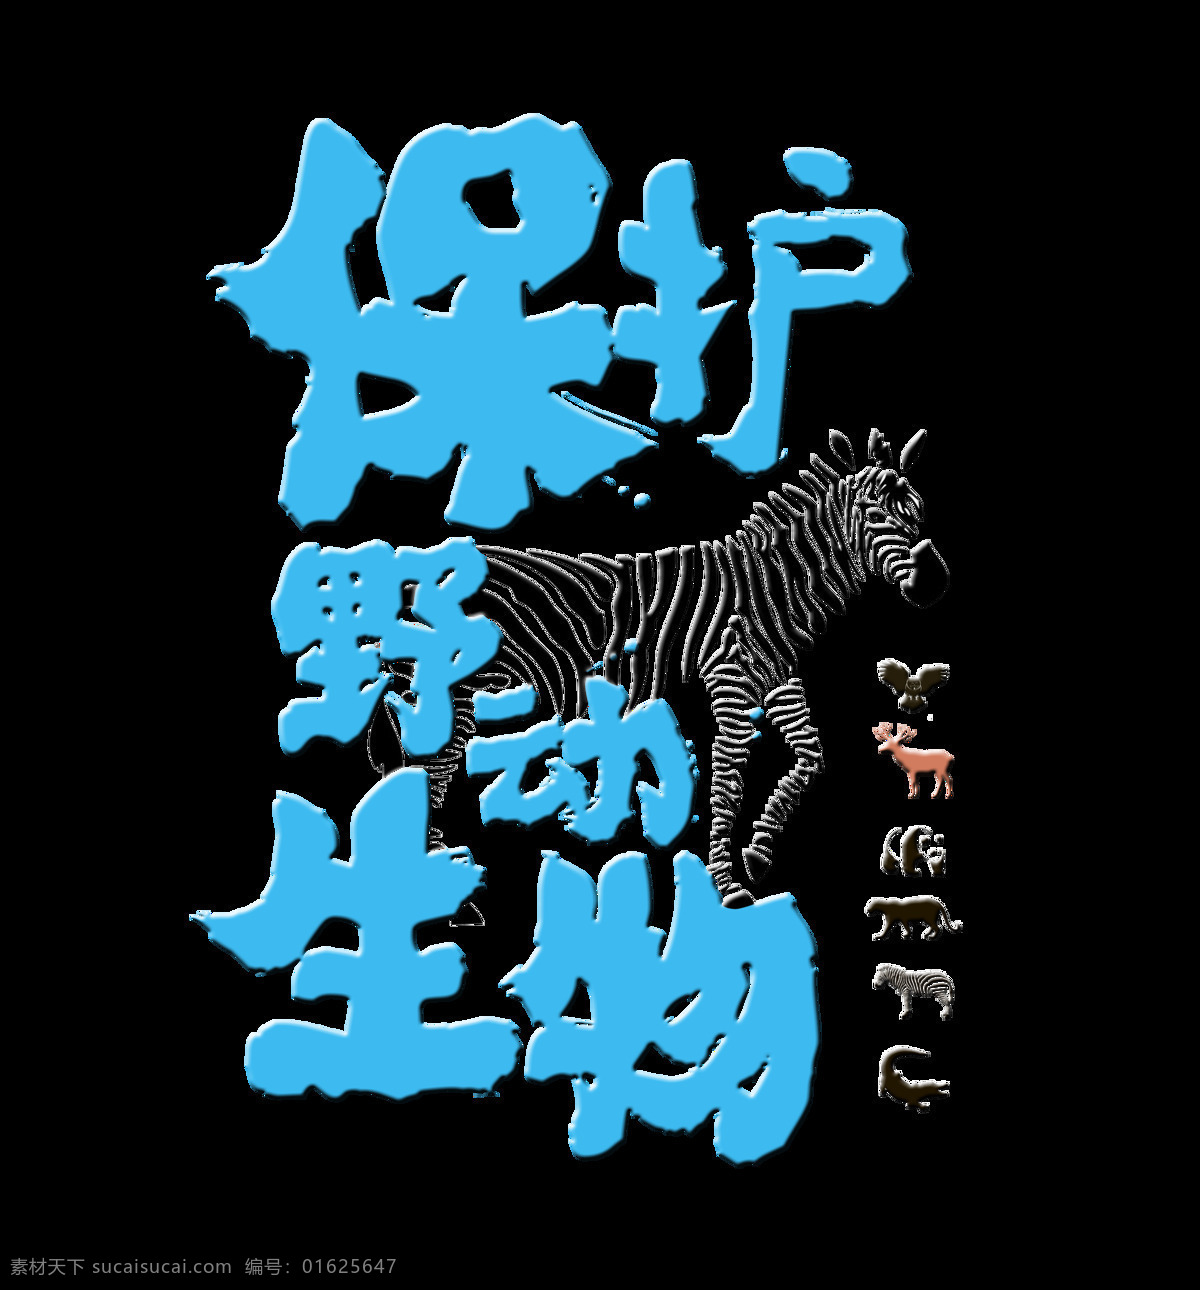 保护 野生动物 维护 生态平衡 艺术 字 字体 海报 公益 保护野生动物 维护生态平衡 可持续发展 艺术字